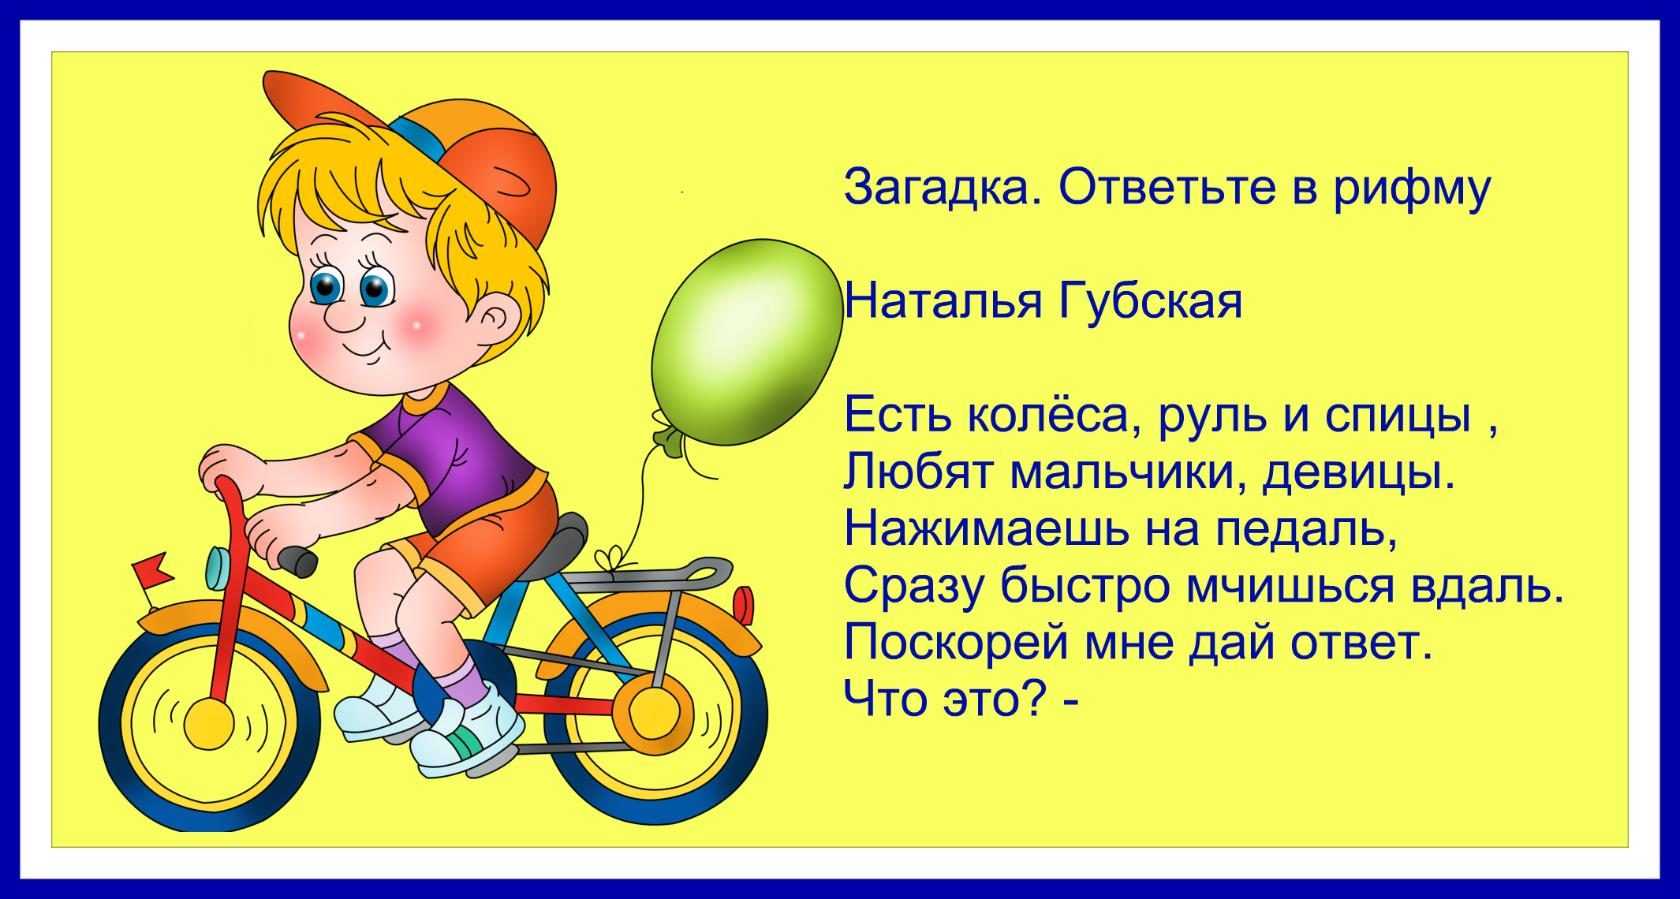 Брей ноги я в дороге. Загадка про велосипед. Загадка про велосипед для детей. Загадка смешная про велосипед. Стих про велосипед для детей.